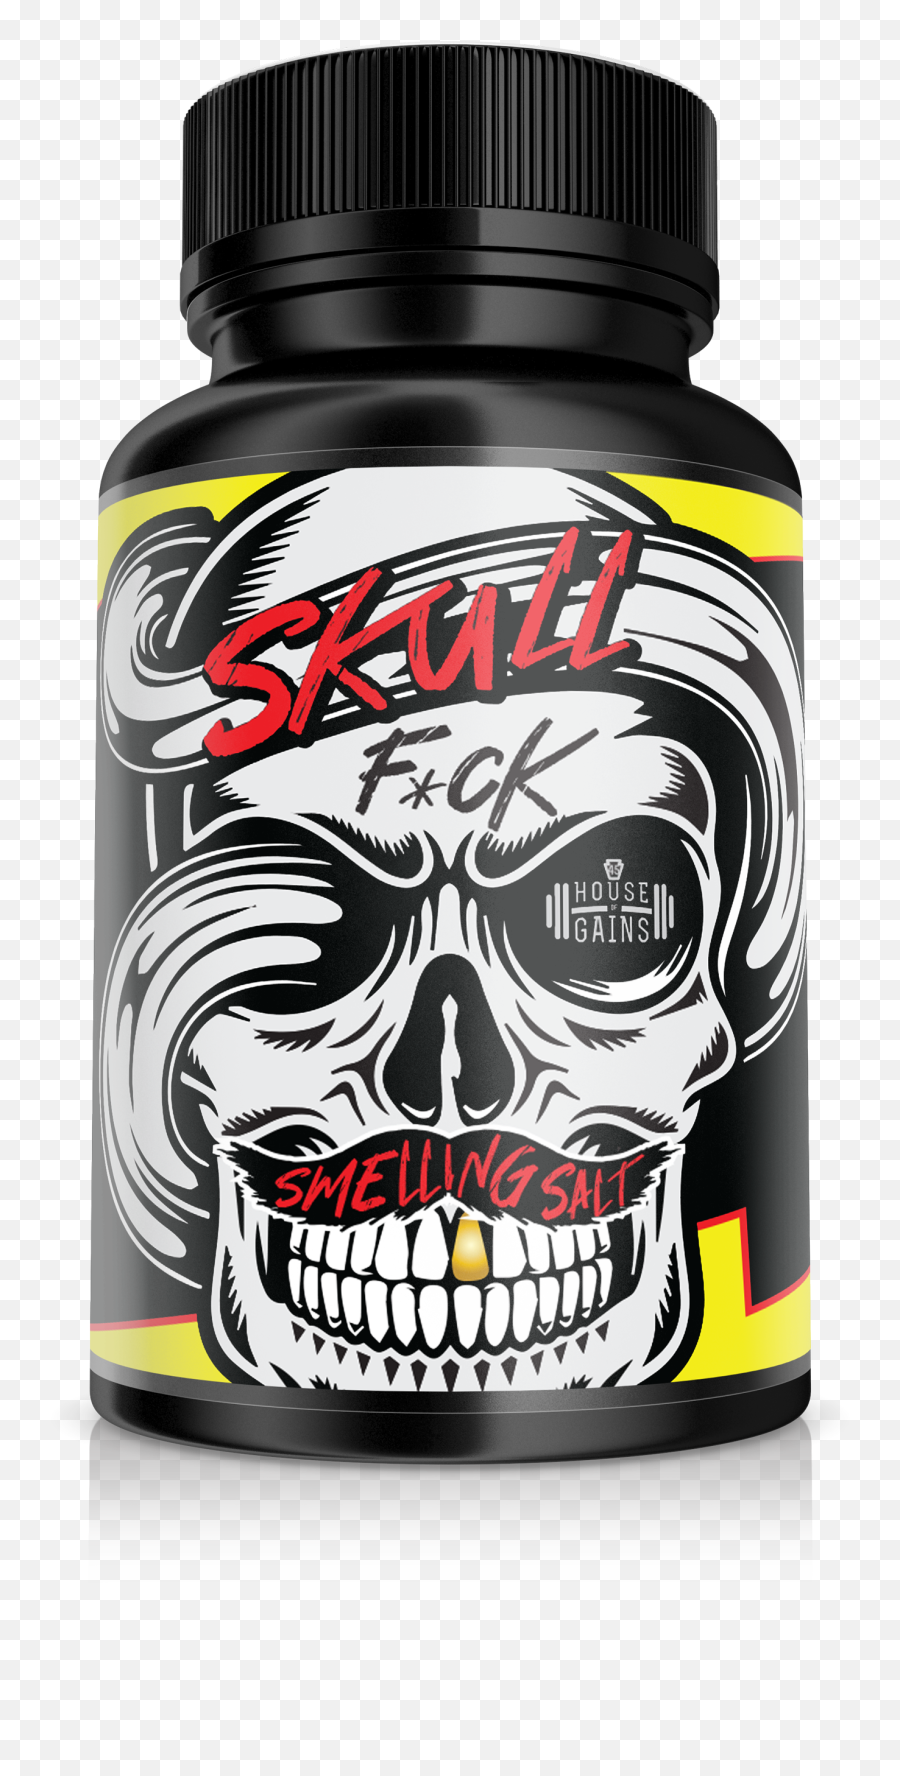 Buy Skull Smelling Salts Online Emoji,Skull & Acrossbones Emoticon